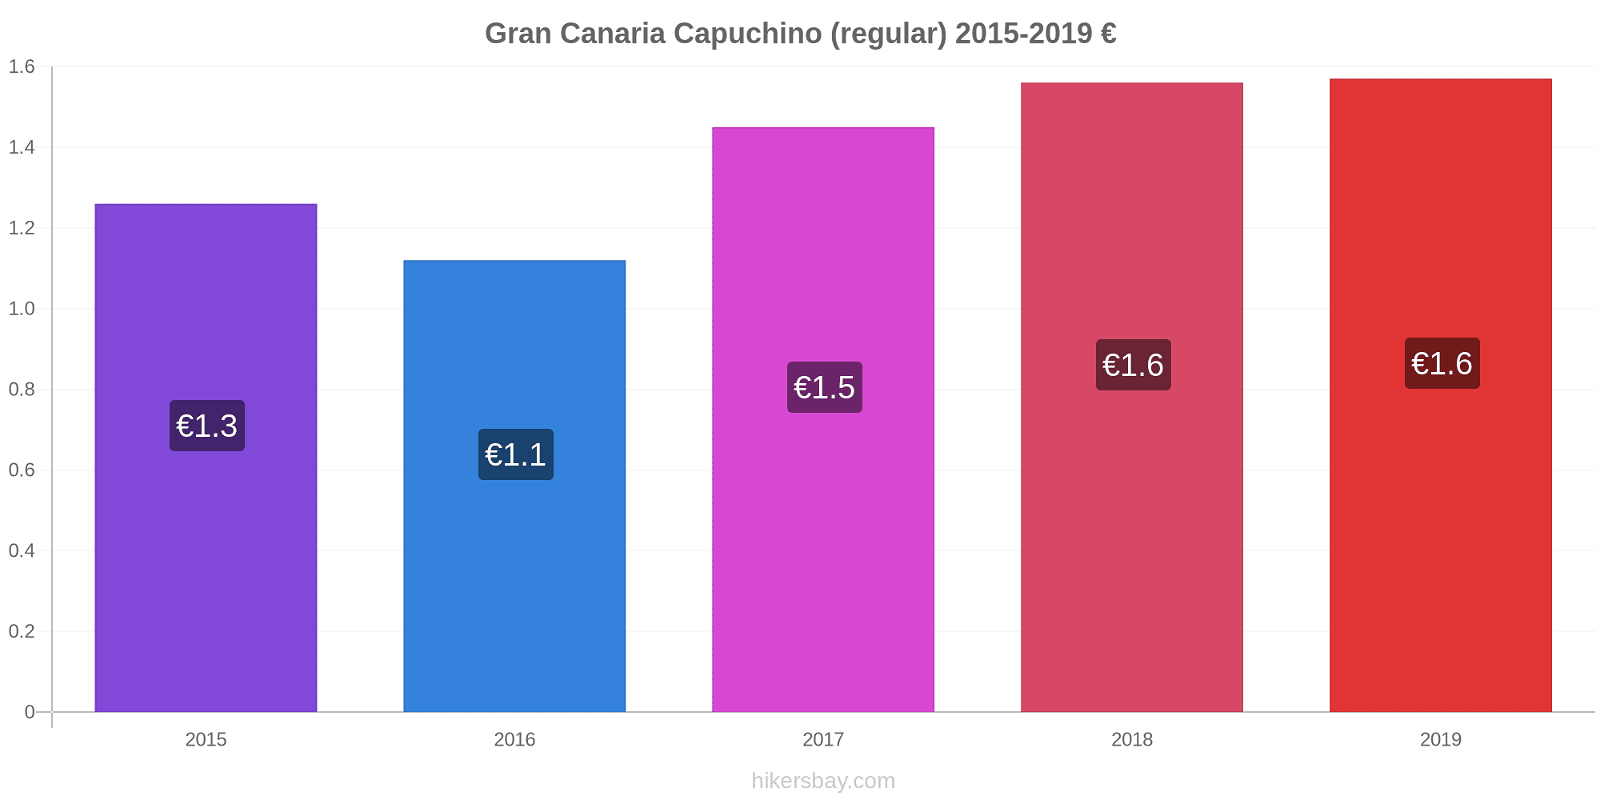 Gran Canaria cambios de precios Capuchino (regular) hikersbay.com